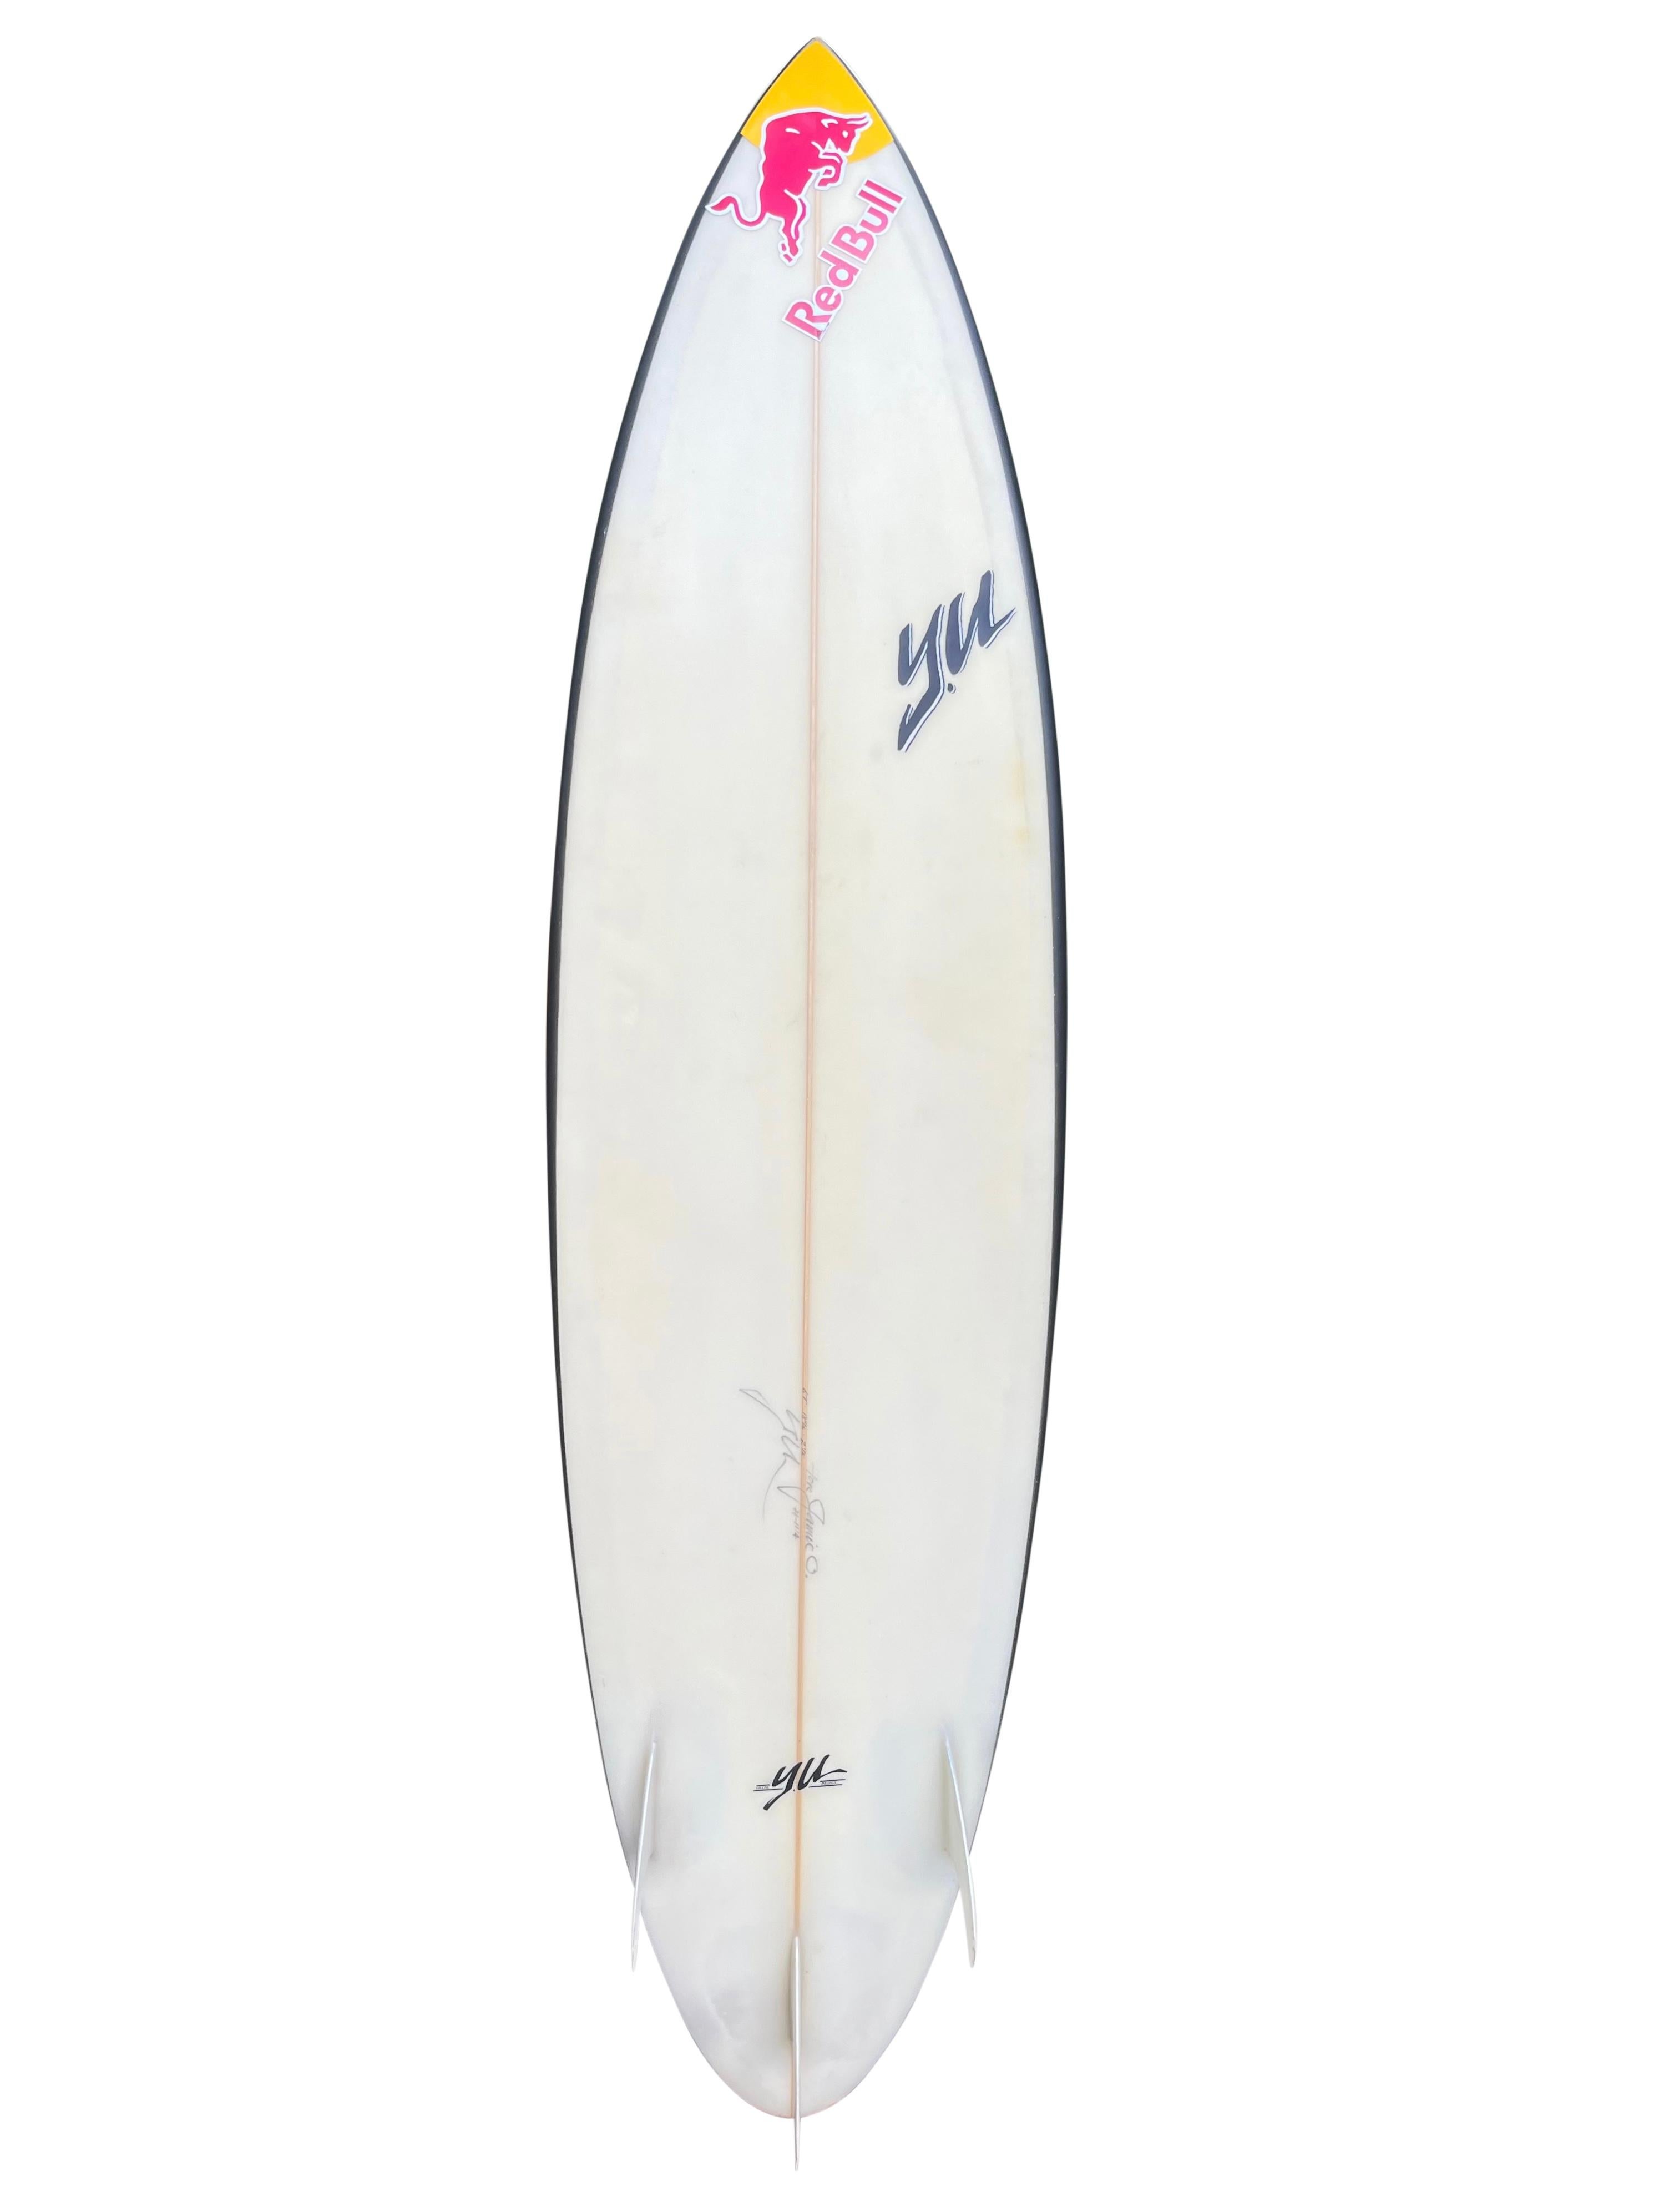 Das persönliche Pipeline-Surfbrett von Jamie O'Brien, hergestellt von Y.U (Yoshinori Ueda). Mit O'Briens charakteristischem rosa Airbrush-Fade und tiefschwarzen Schienen. Speziell für das Reiten von Barrels an der legendären hawaiianischen Banzai